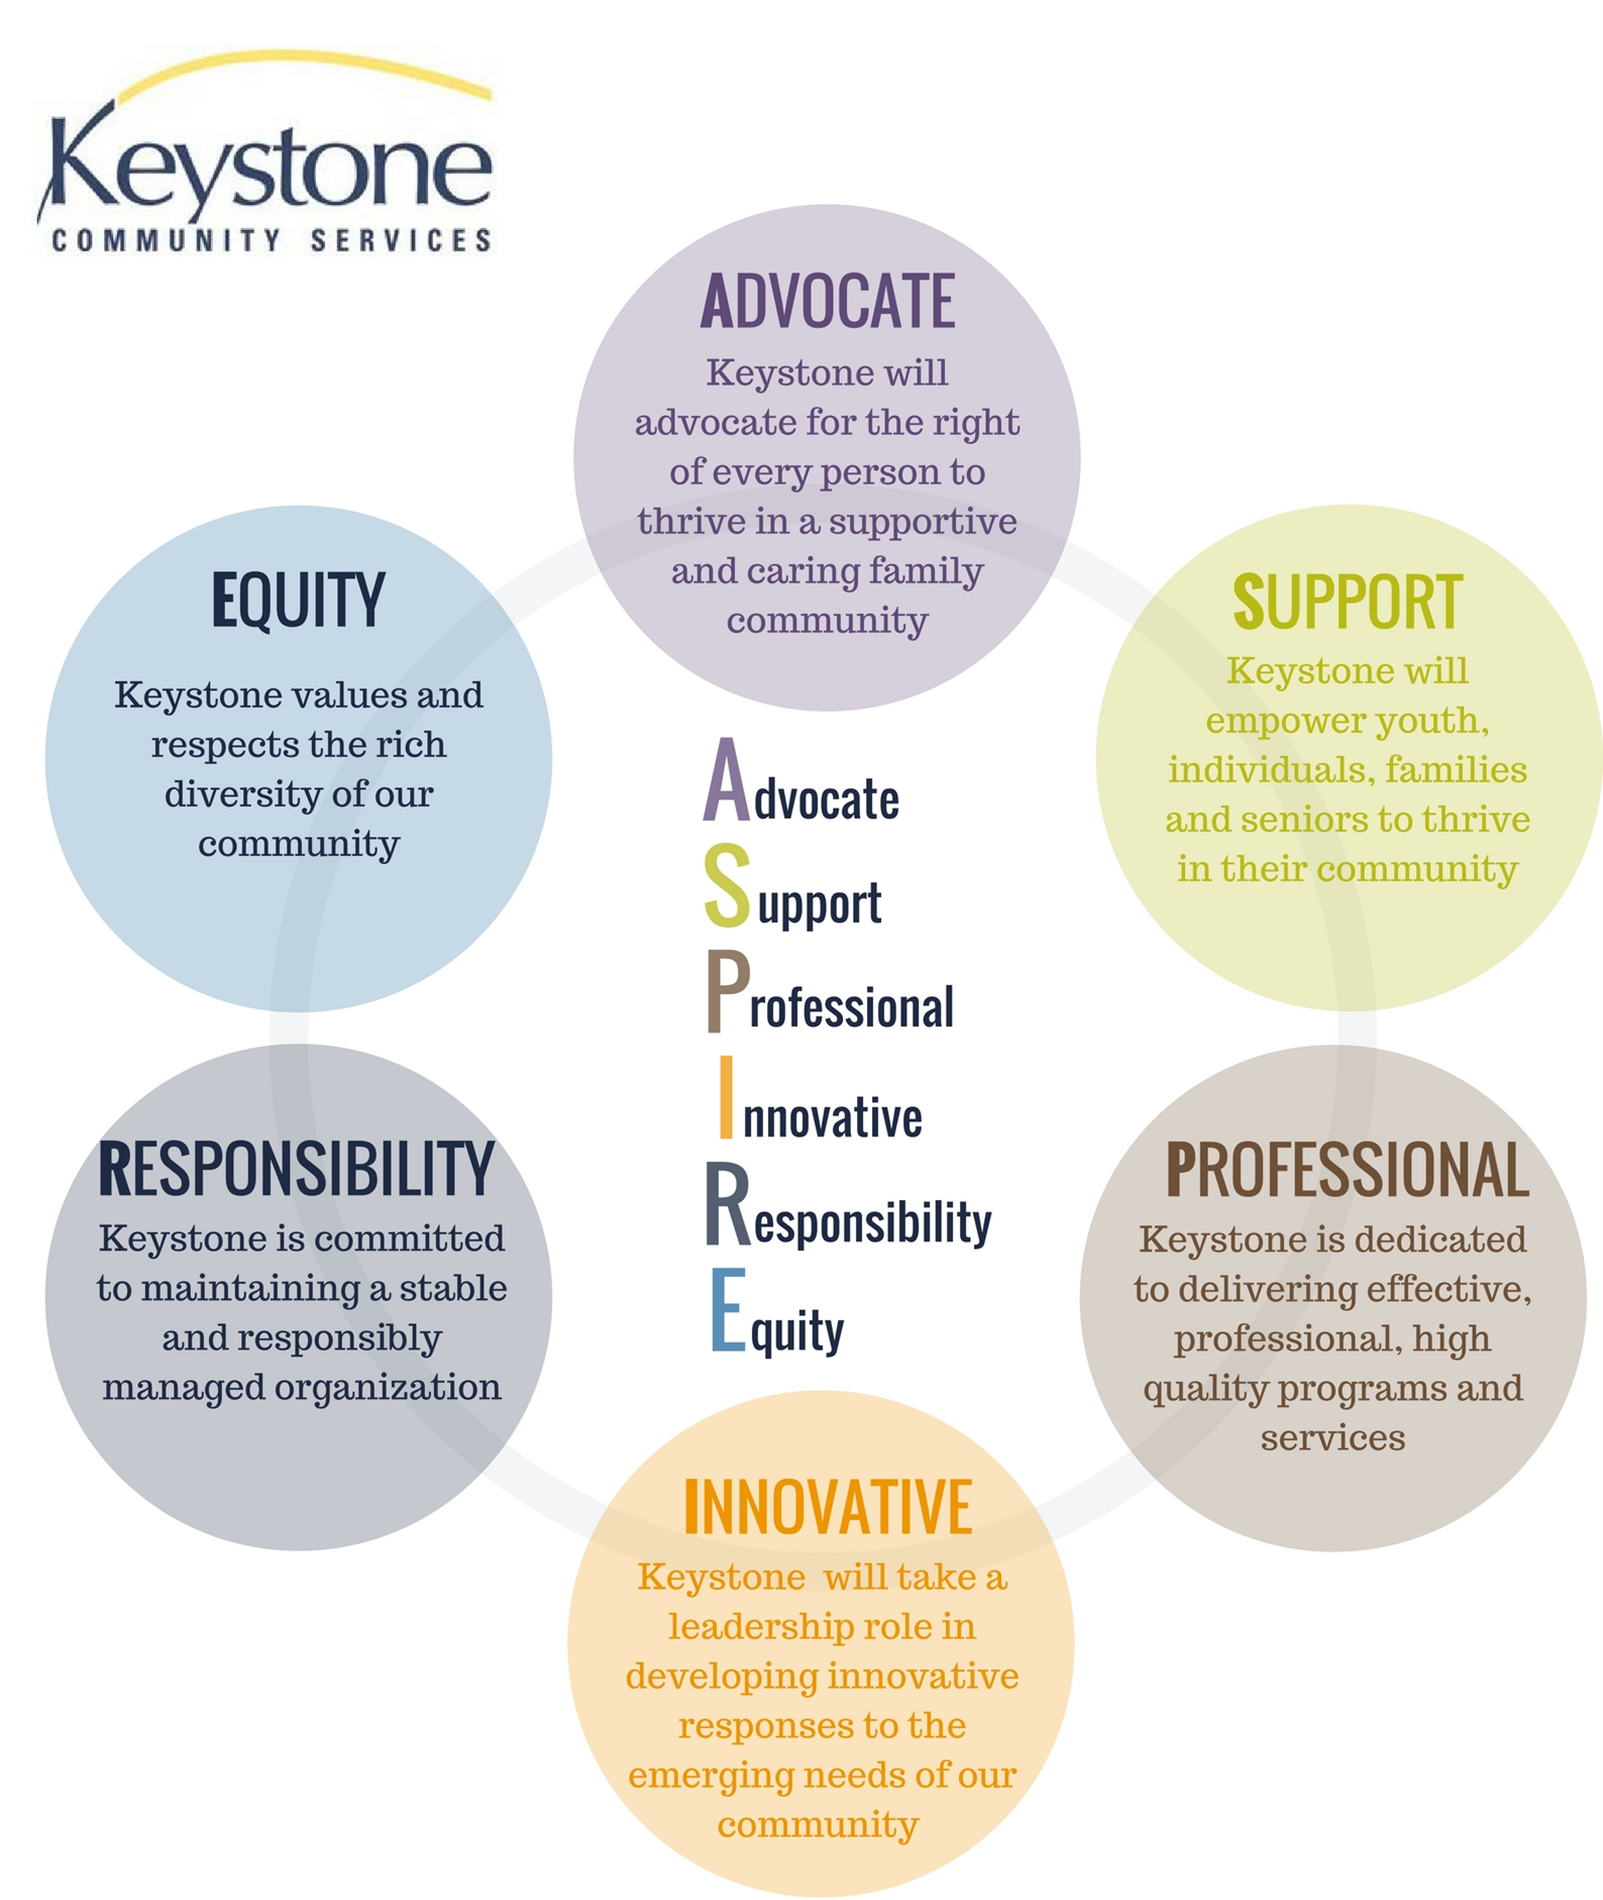 Keystone values